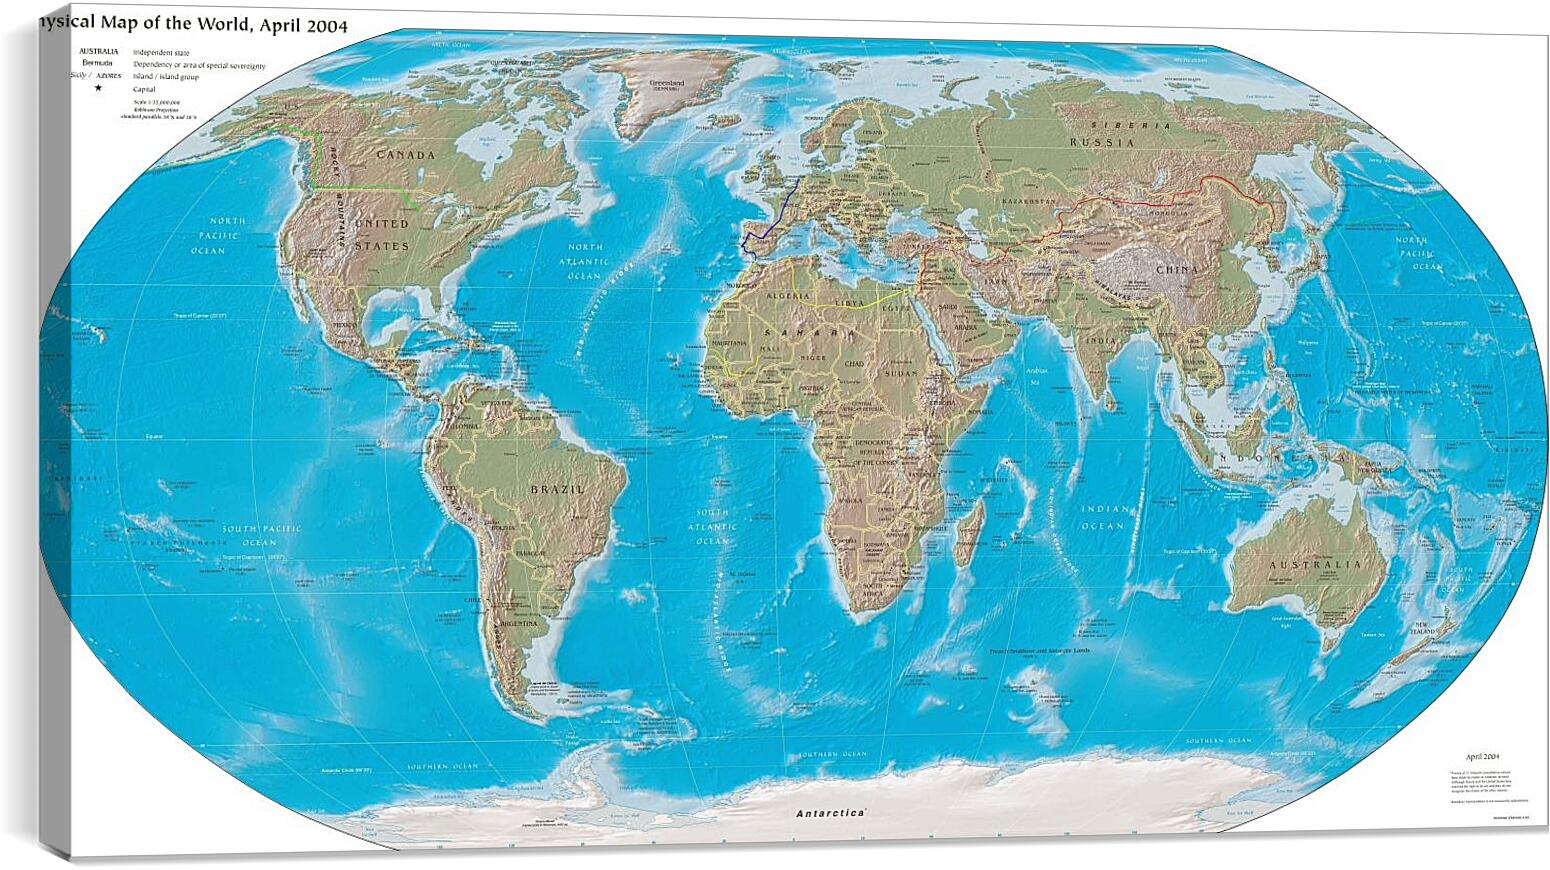 Постер и плакат - Физическая карта мира, апрель 2004